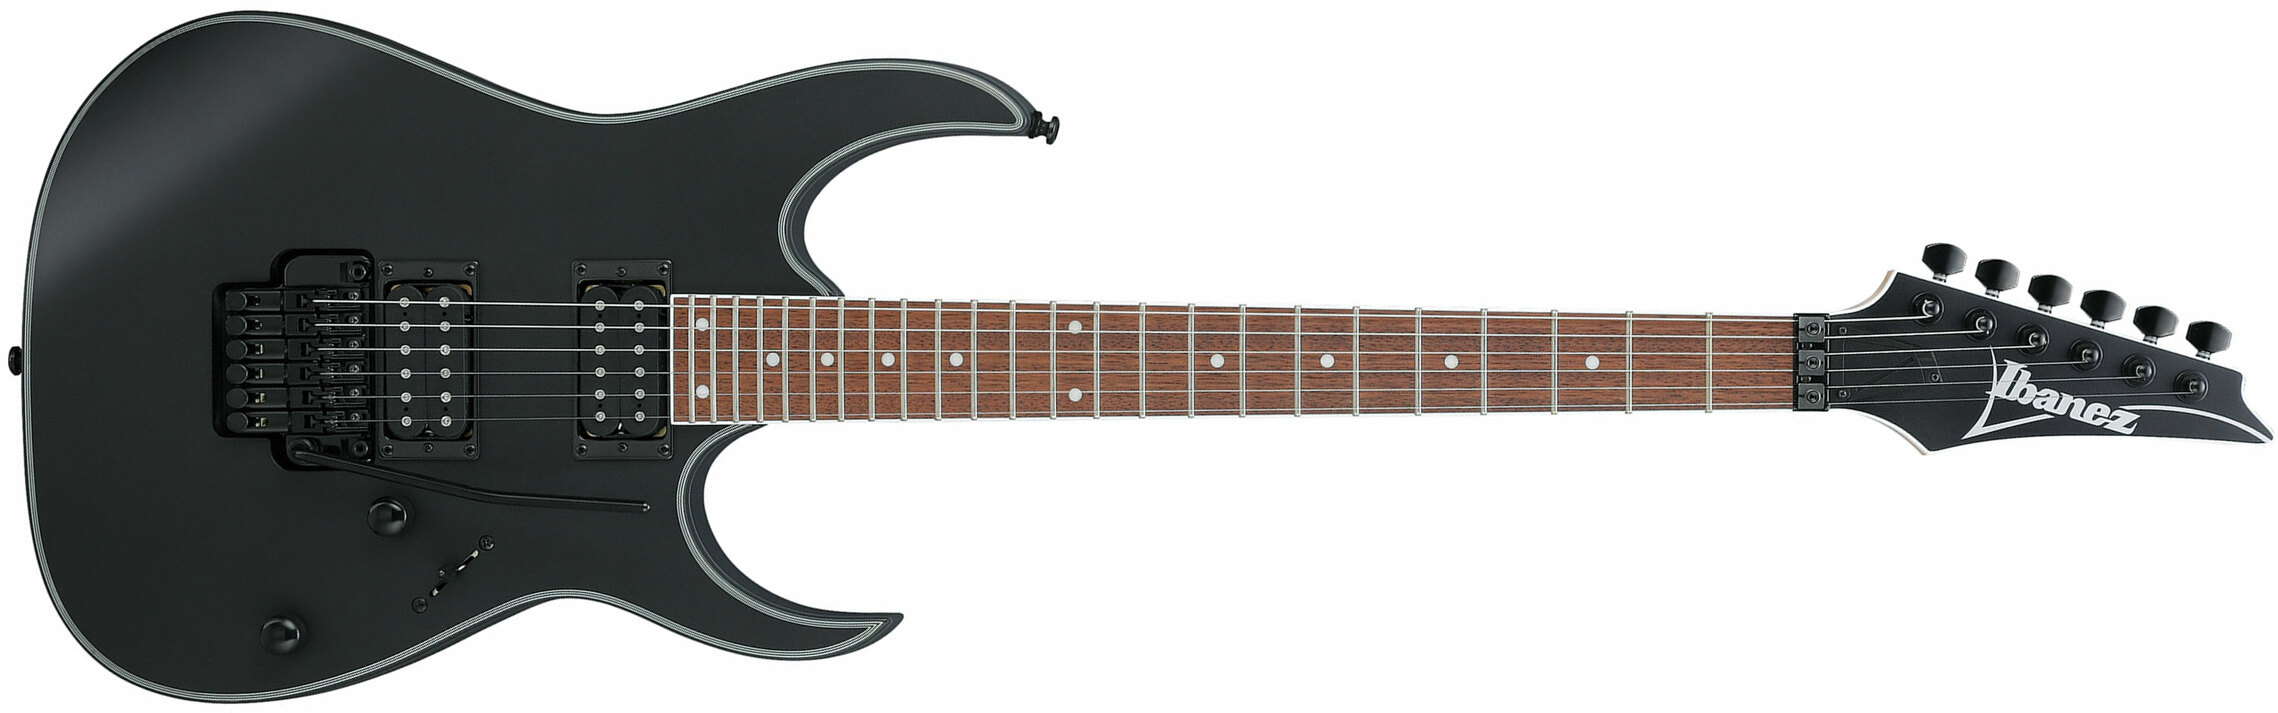 Ibanez Rg320exz Bkf Standard Fr Hh Jat - Black Flat - E-Gitarre in Str-Form - Main picture